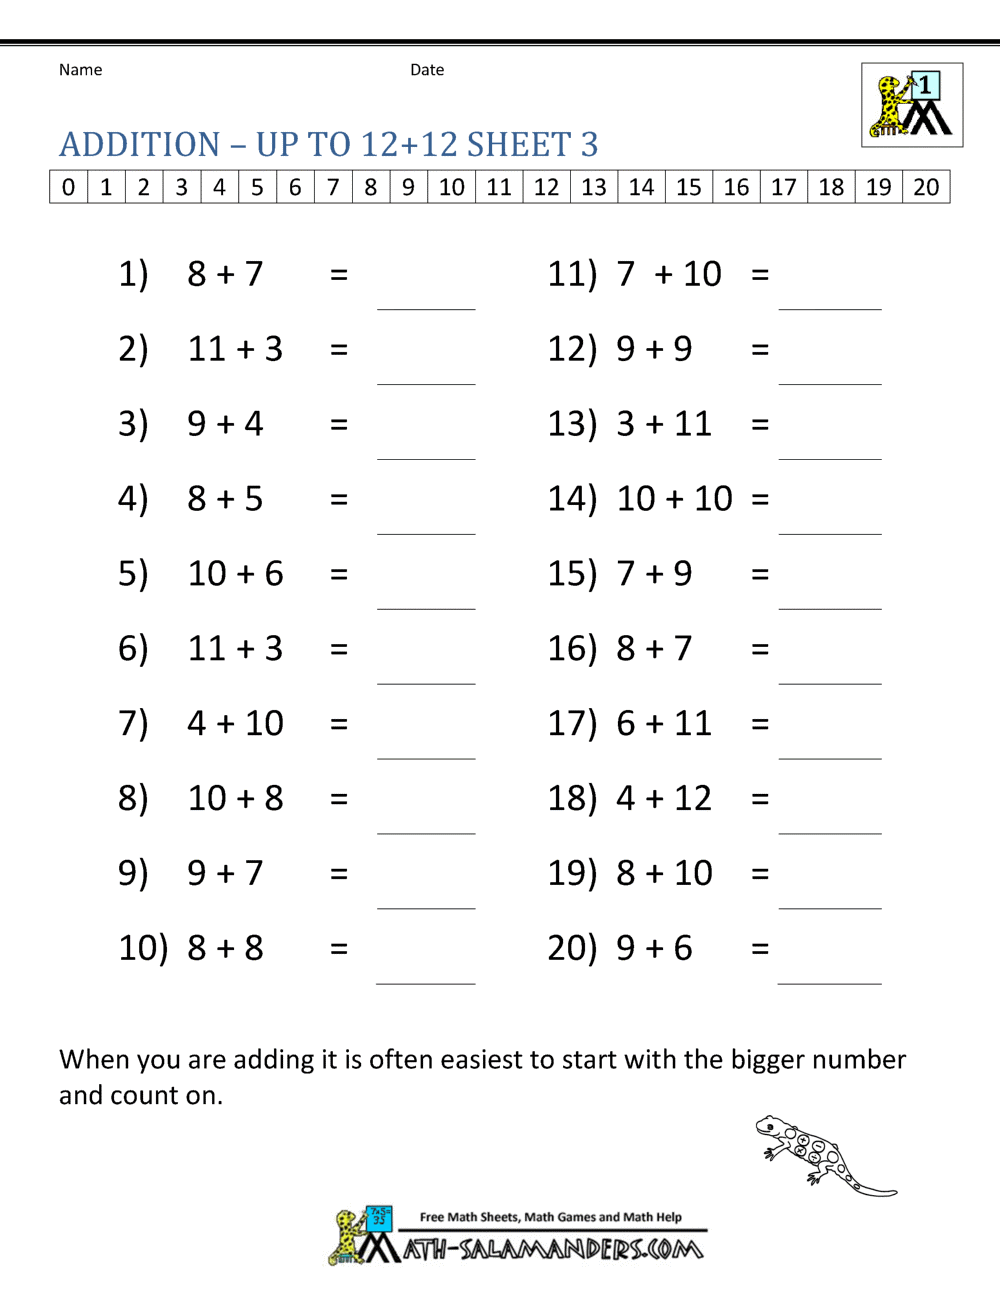 missing-number-worksheet-new-864-missing-number-addition-worksheets